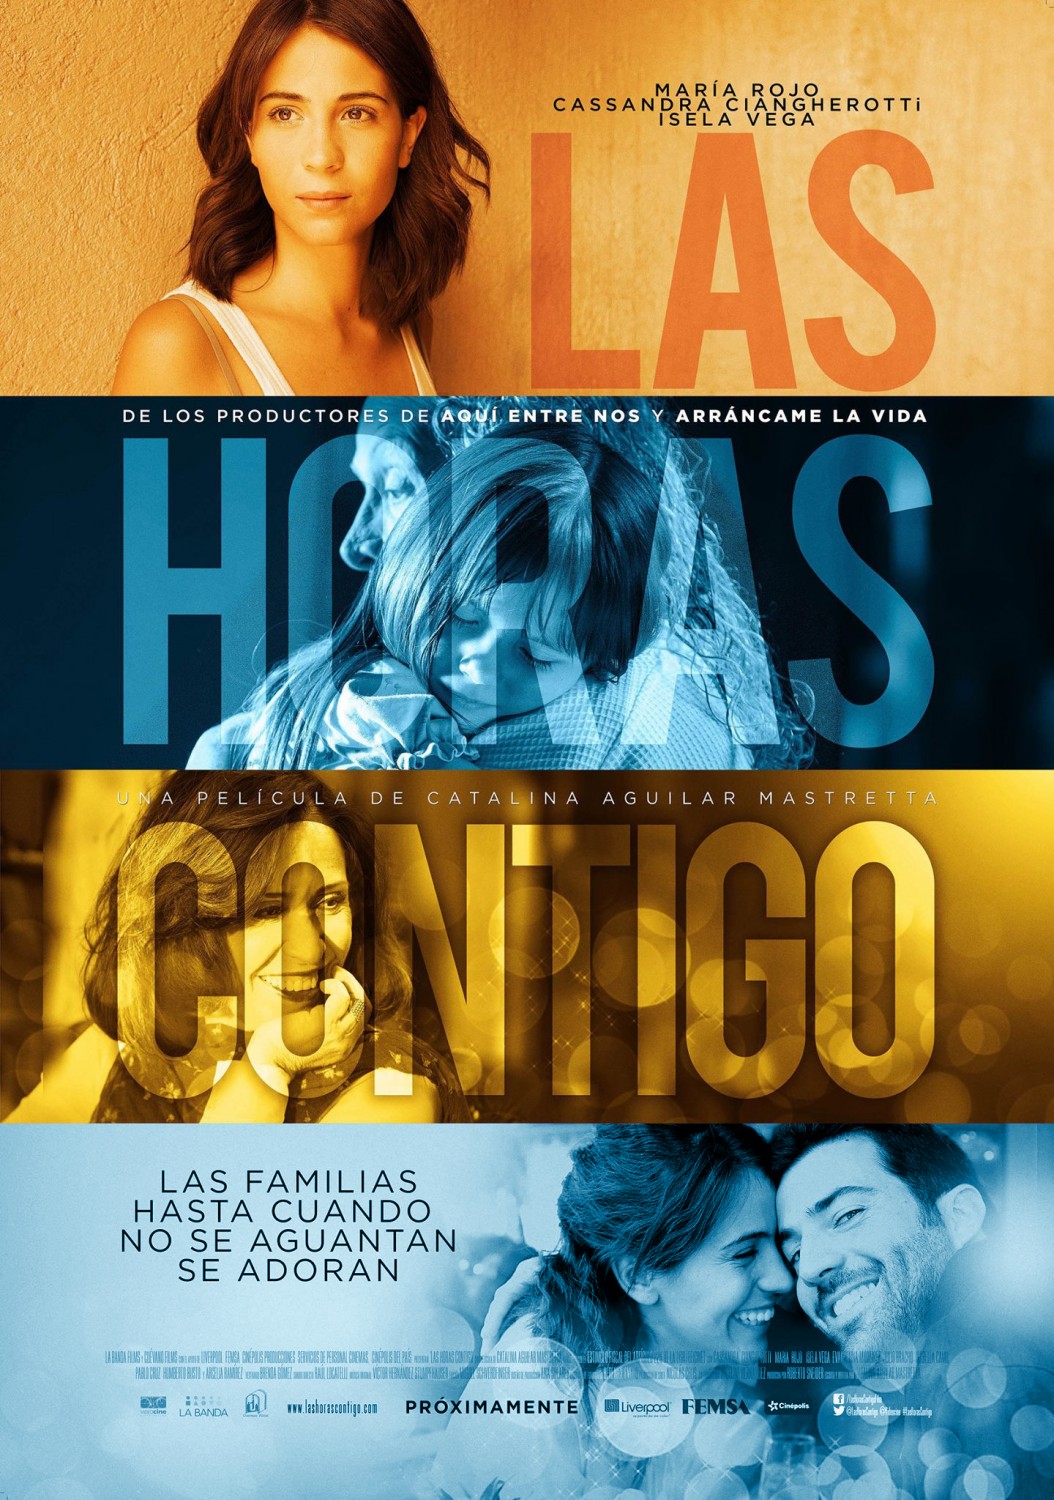 Extra Large Movie Poster Image for Las horas contigo (#2 of 2)